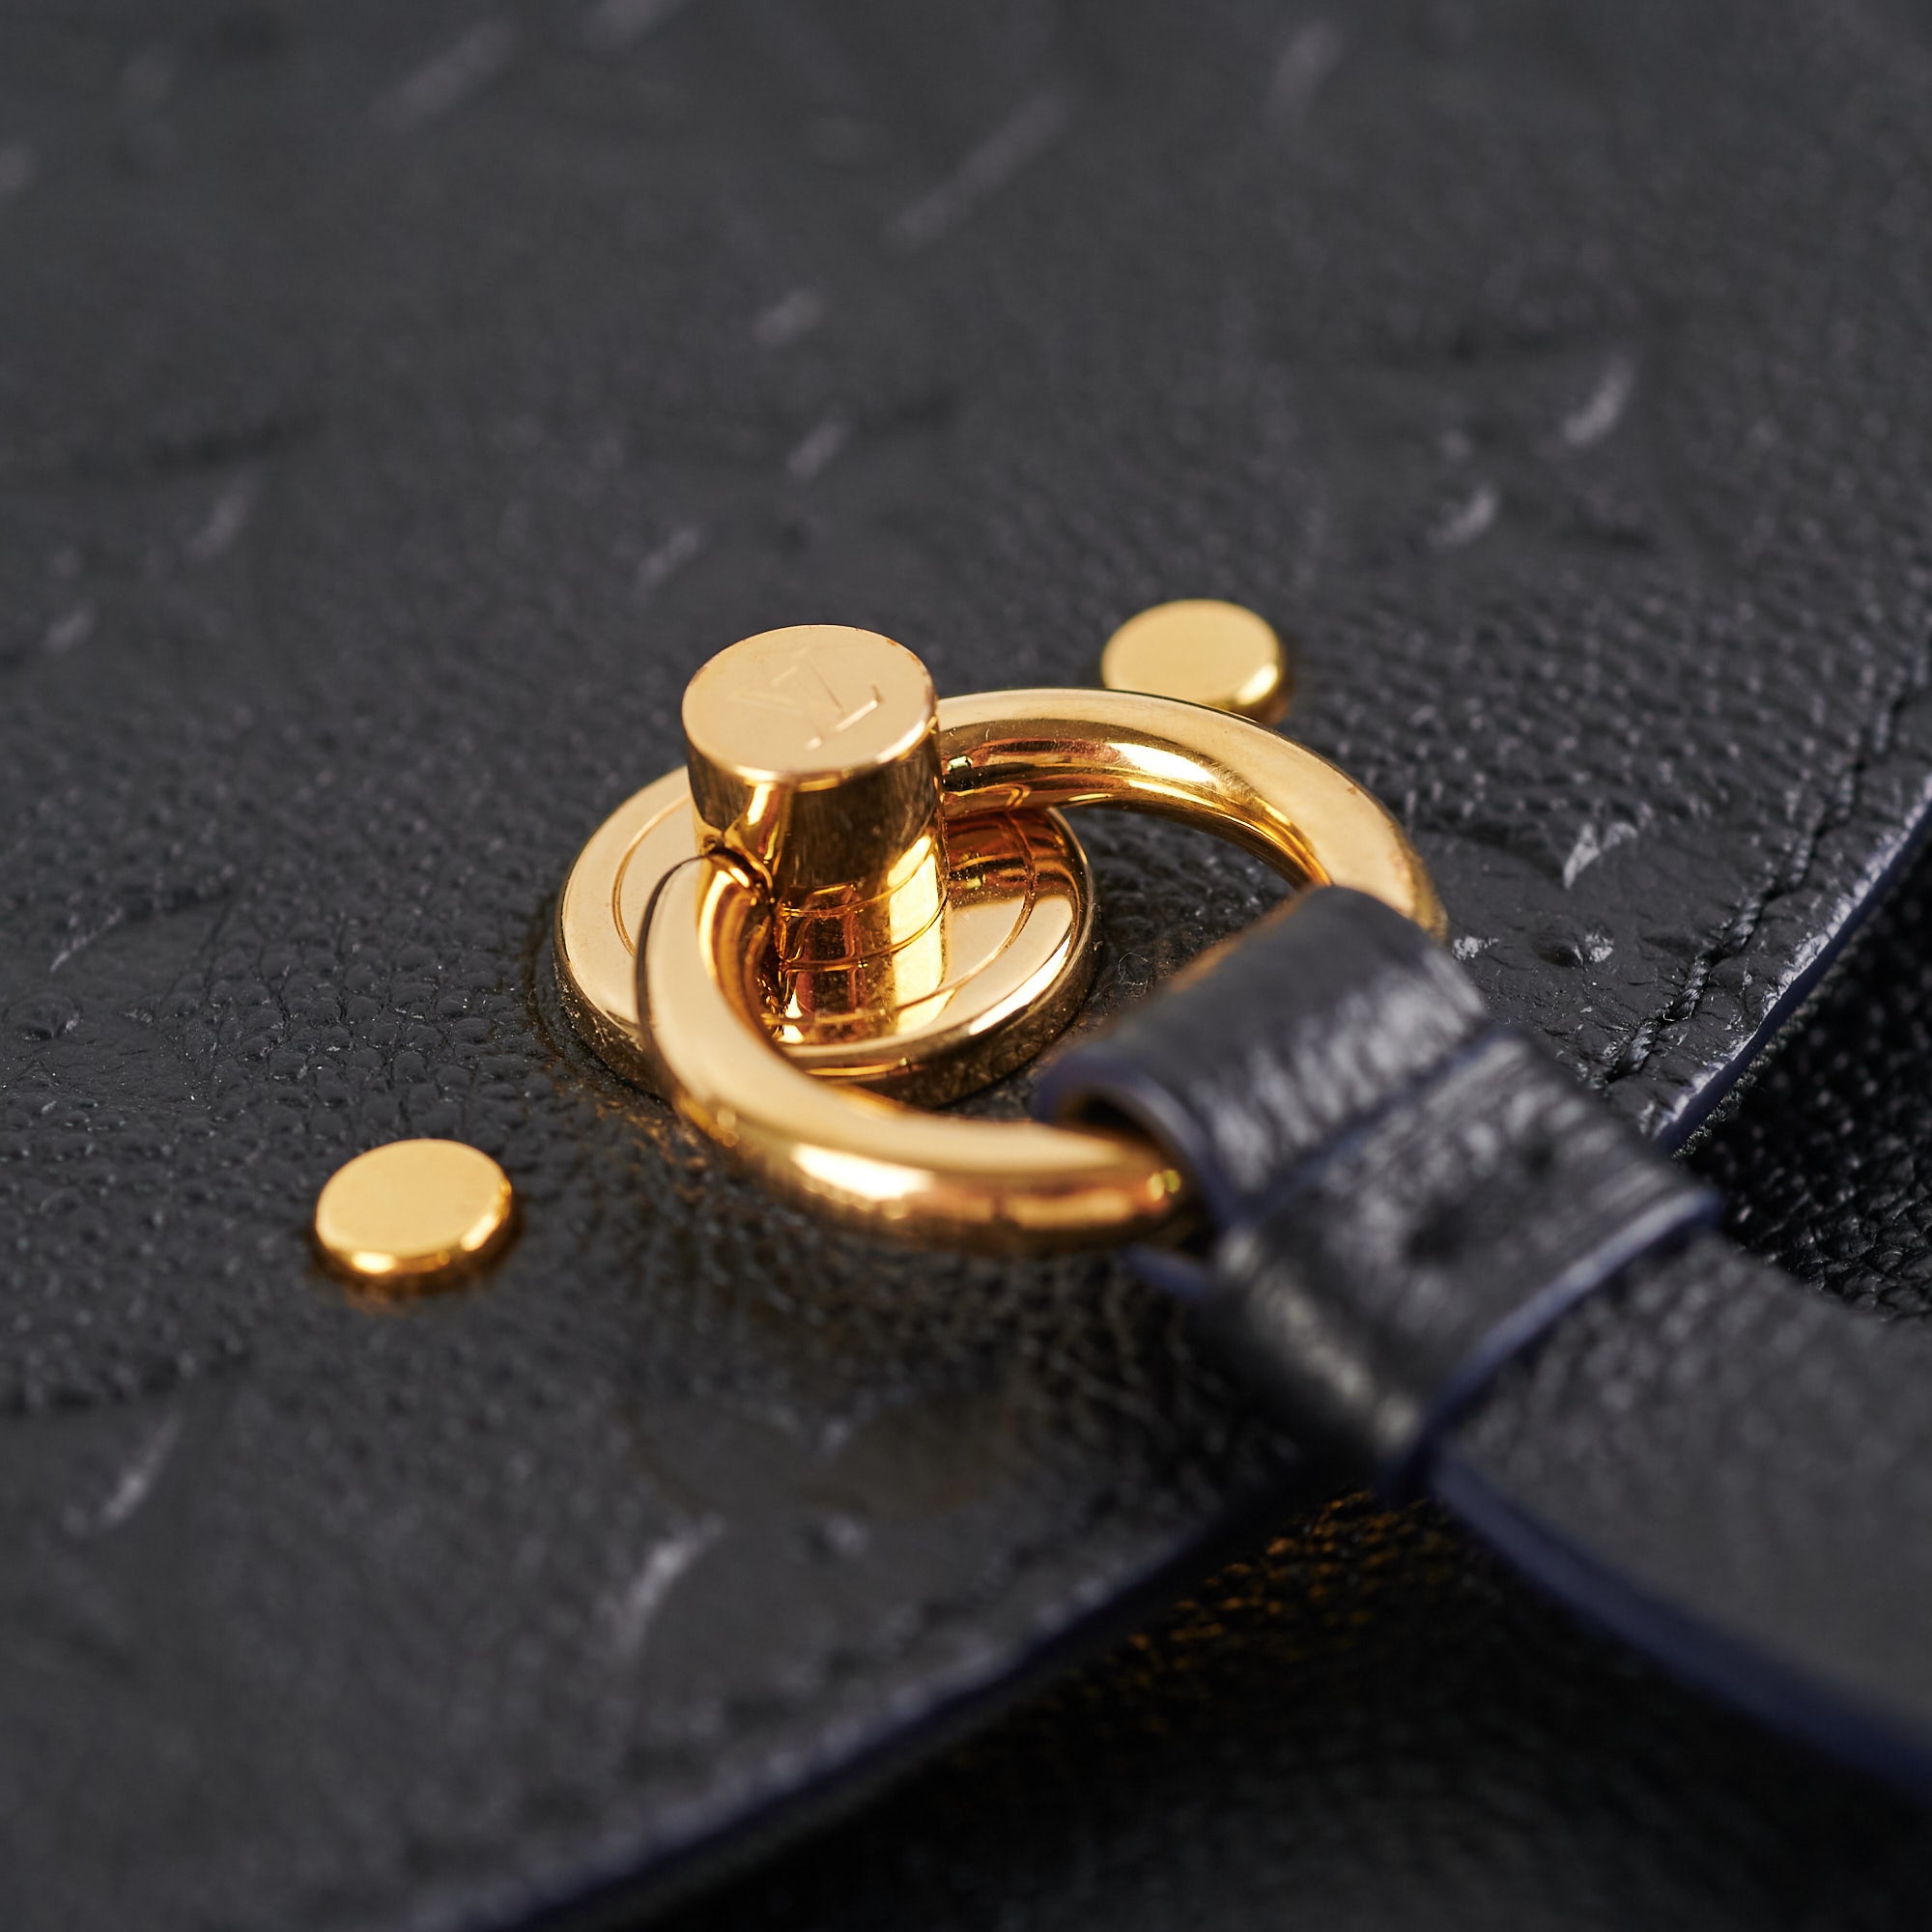 Louis Vuitton Navy Monogram Empreinte Blanche BB Gold Hardware